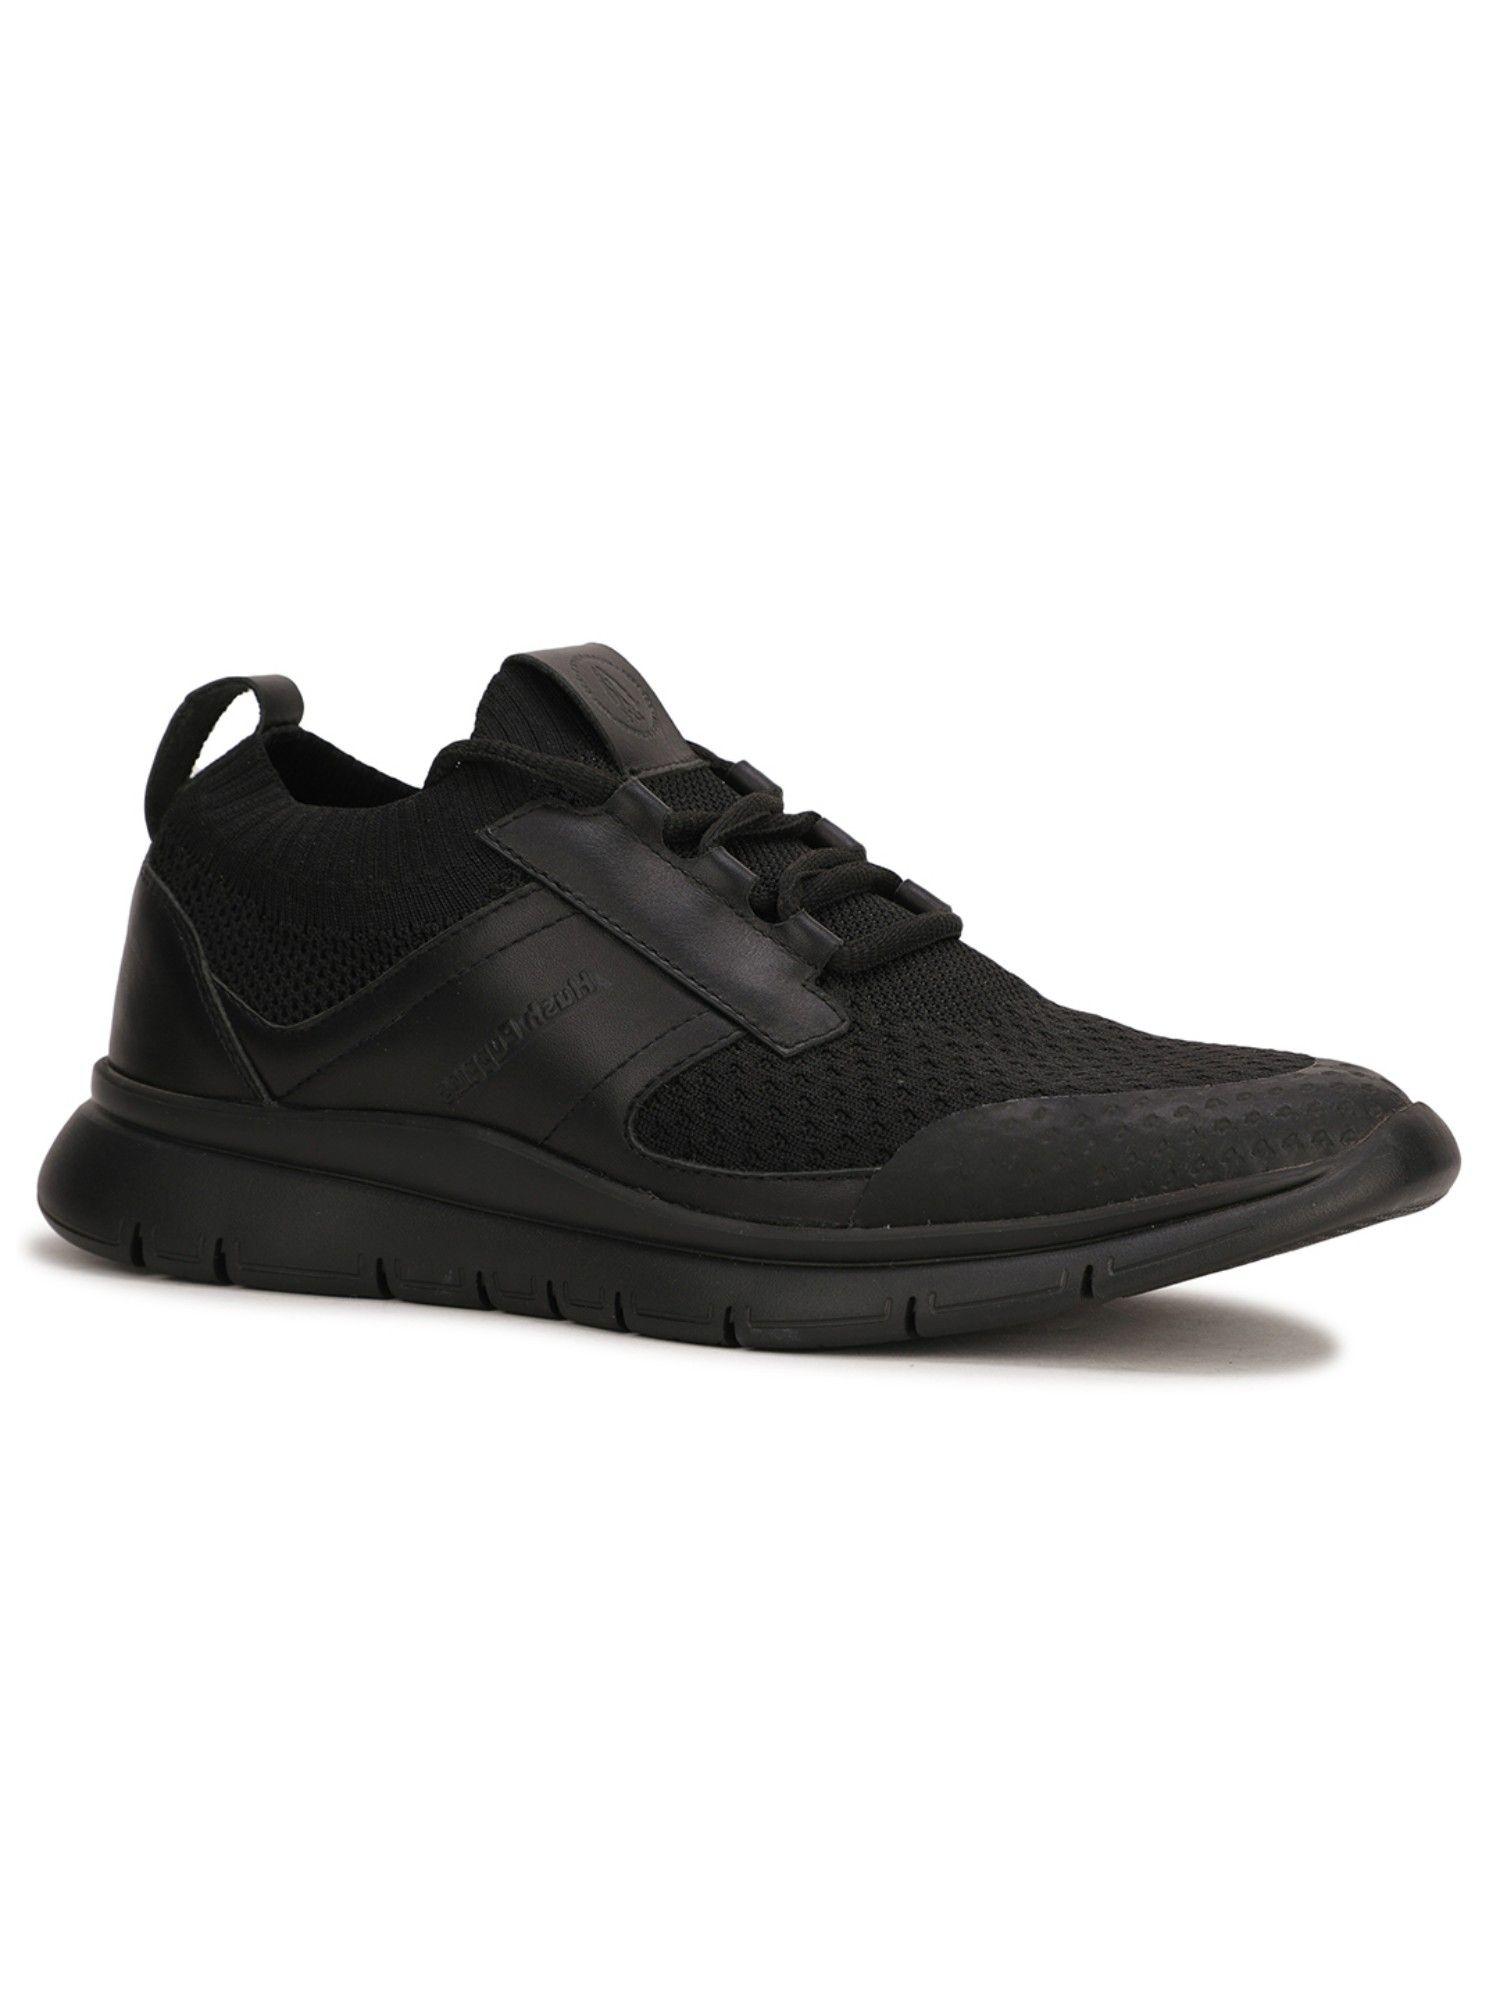 sneakers-for-men-(black)